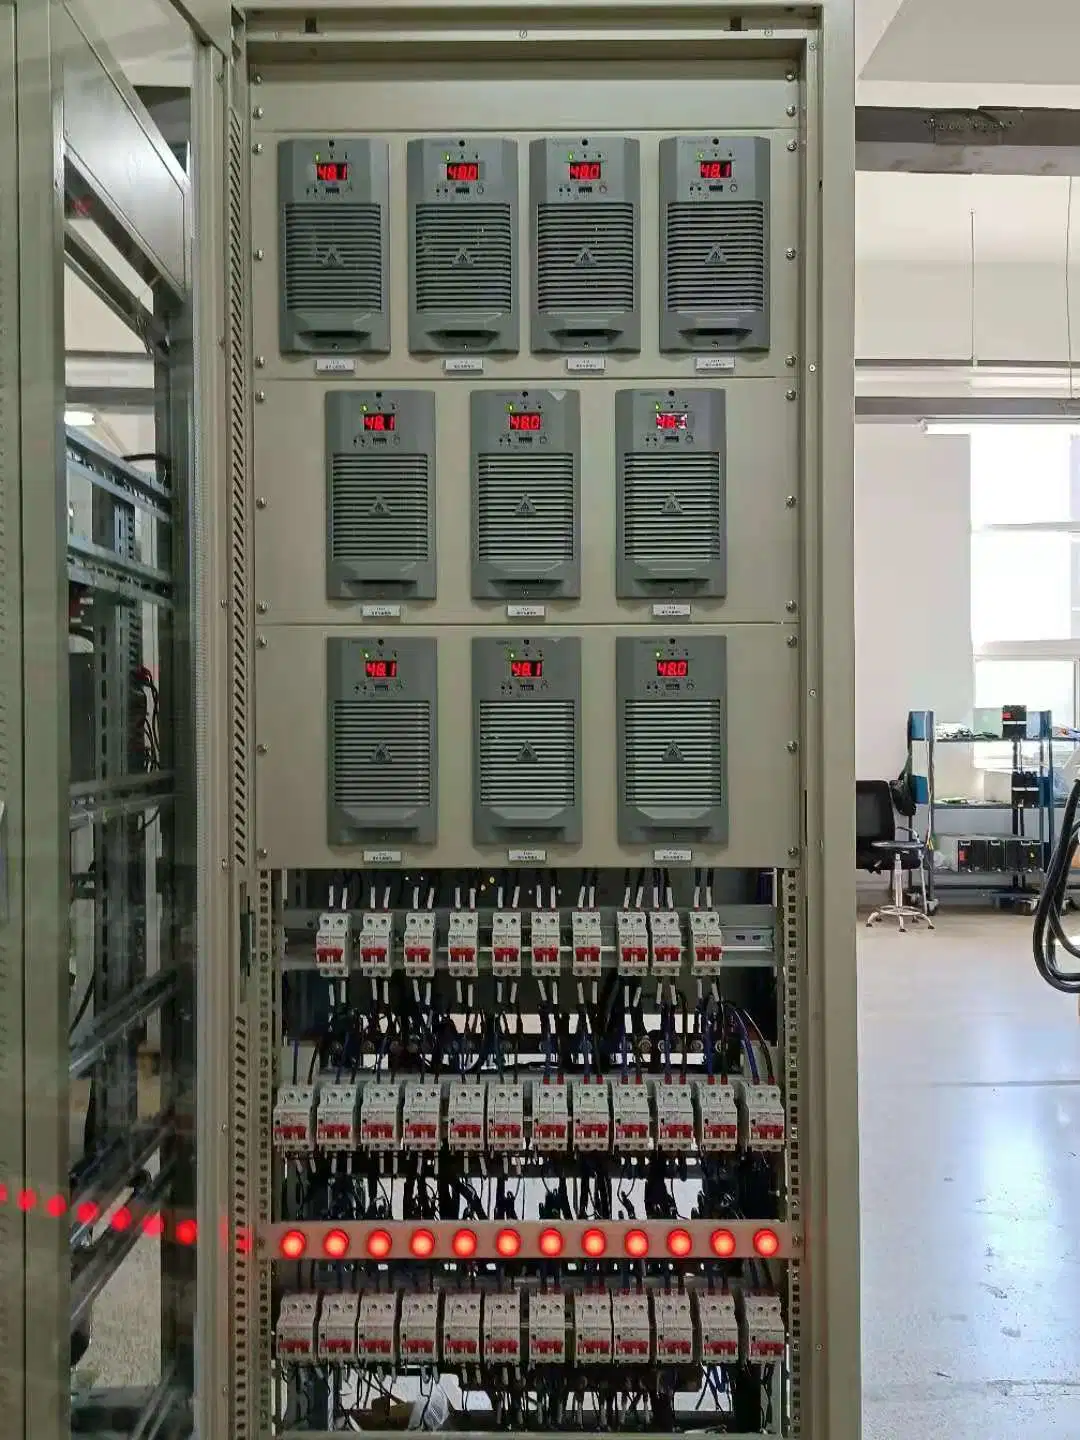 Sistema DC / sistema Rectifier / sistema de carga / 220VDC Sistema / sistema 110VDC / sistema de batería 150ah / carga Armario / Rectifier